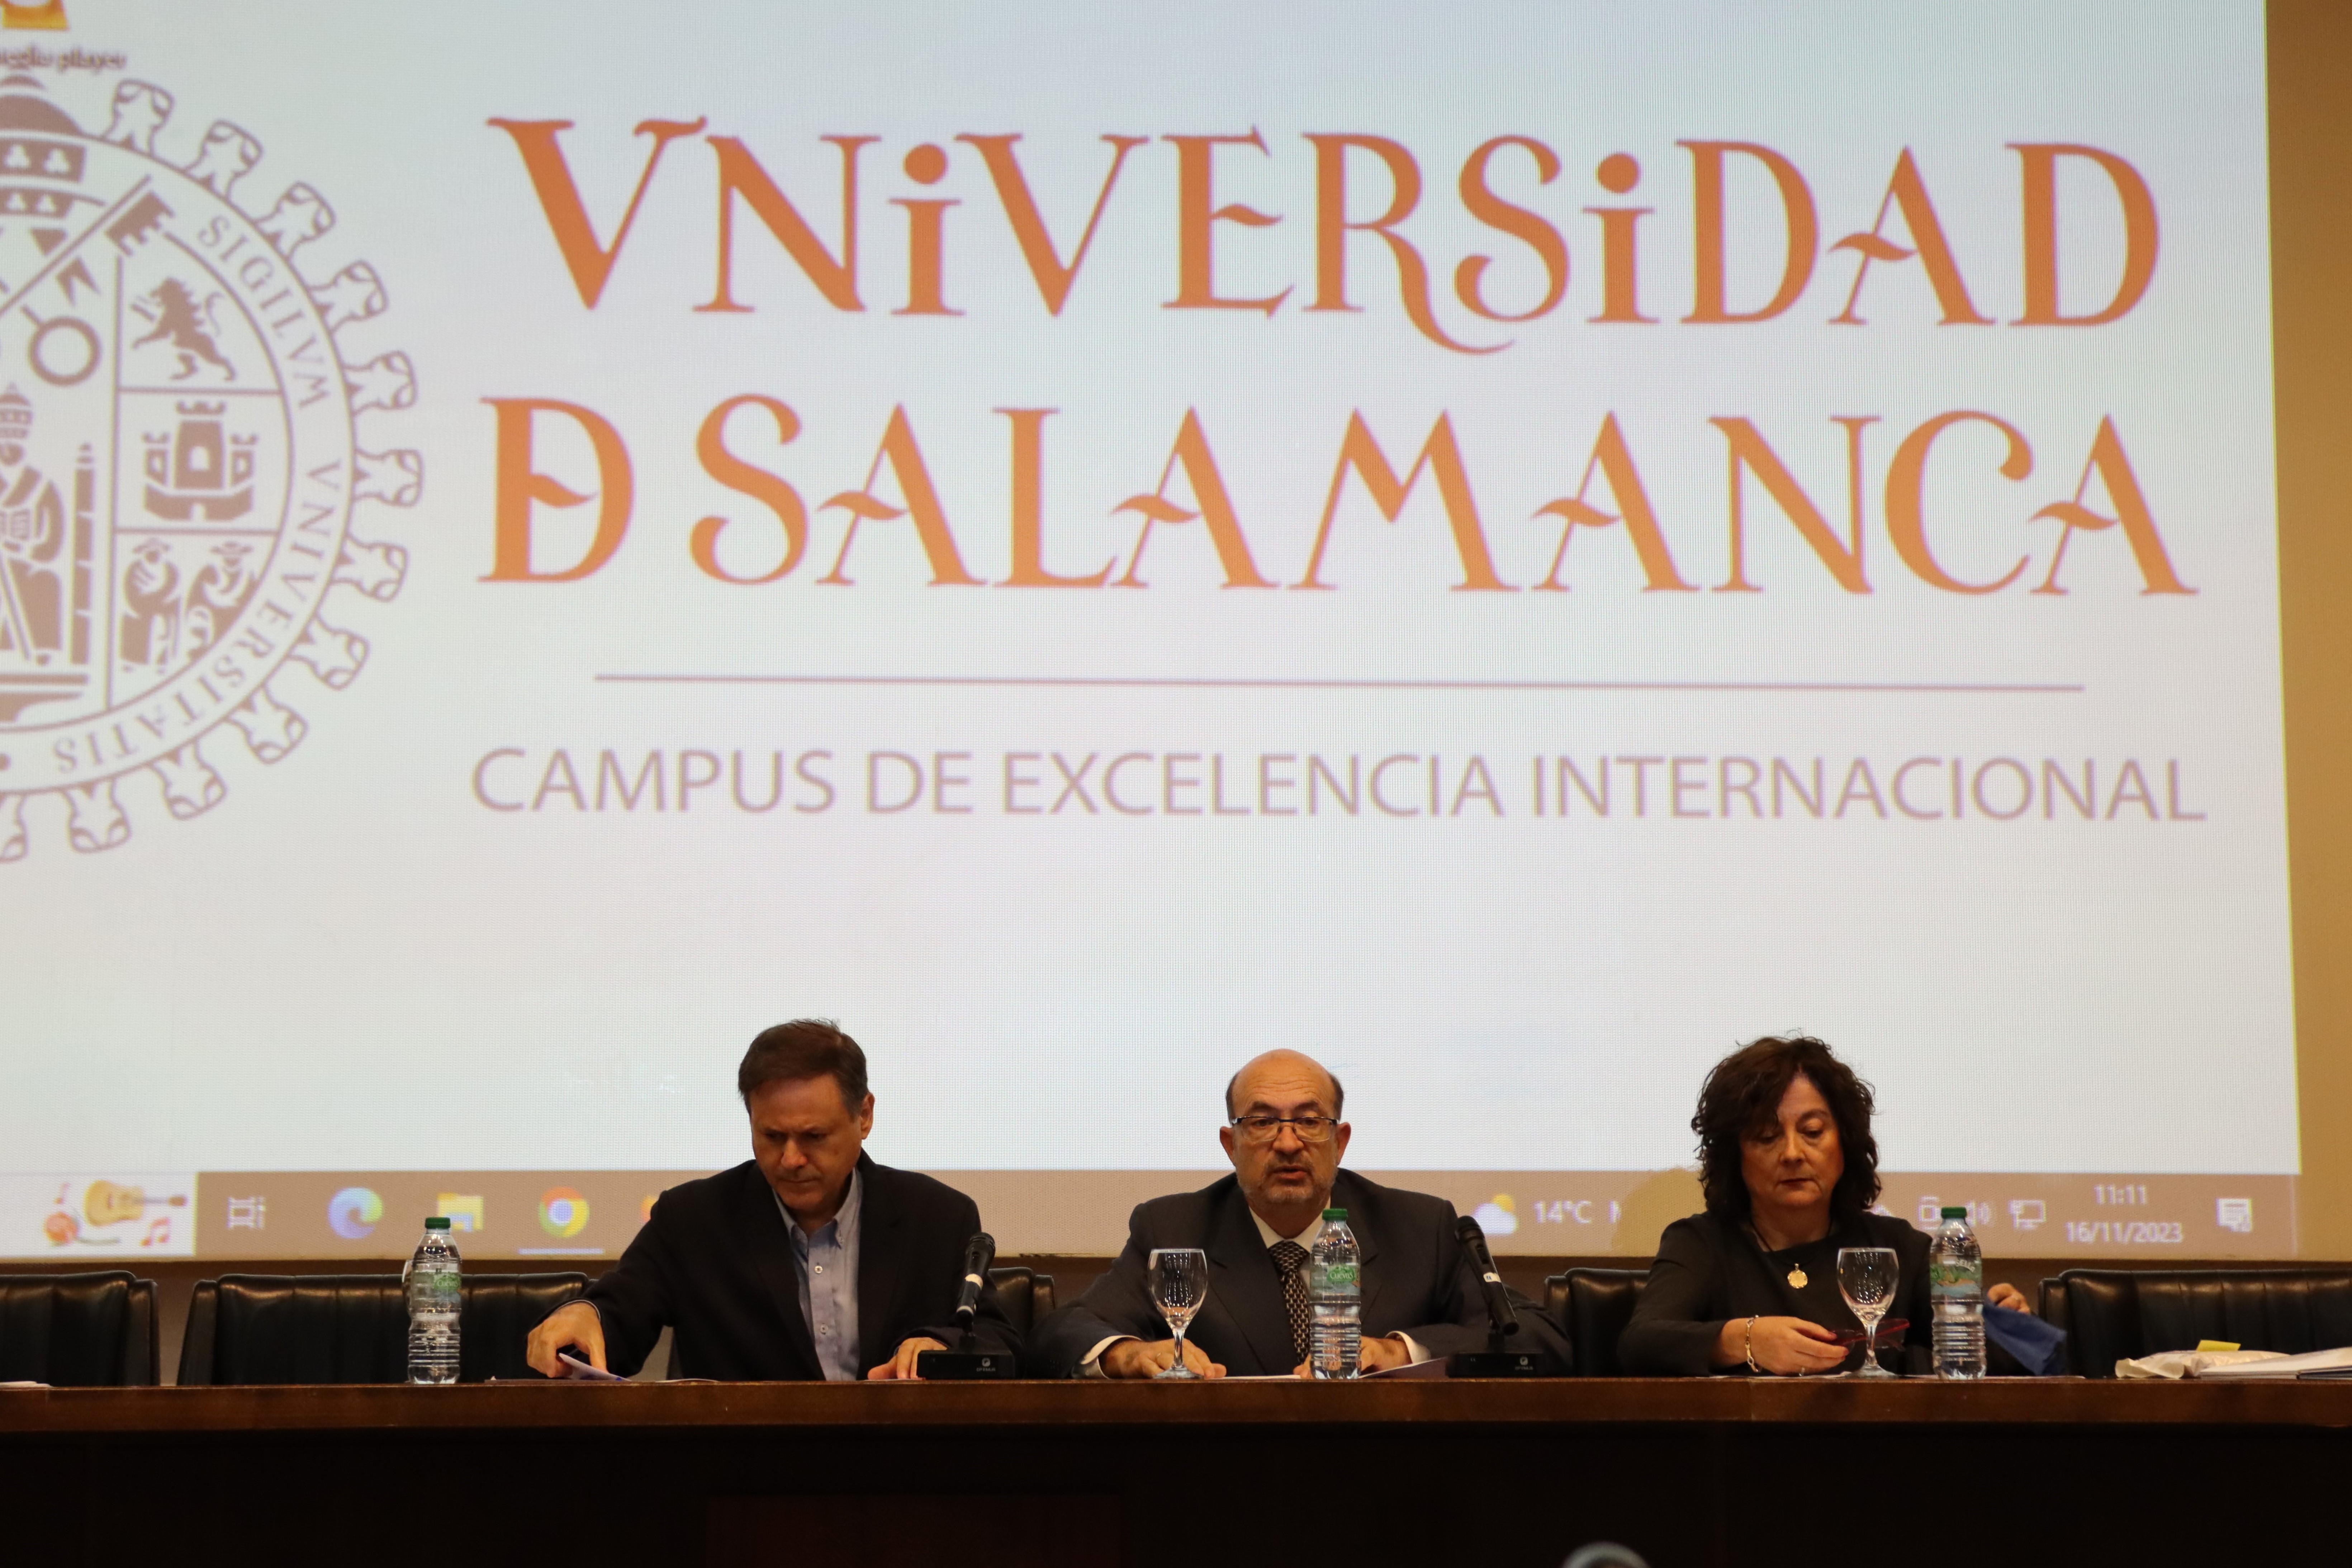 El vicerrector de Ordenación Académica y Profesorado, David Díez, ha presidido el evento junto con los dos decanos, Antonio Miguel Martínez (Ciencias) y María del Mar Canedo (Ciencias Químicas).